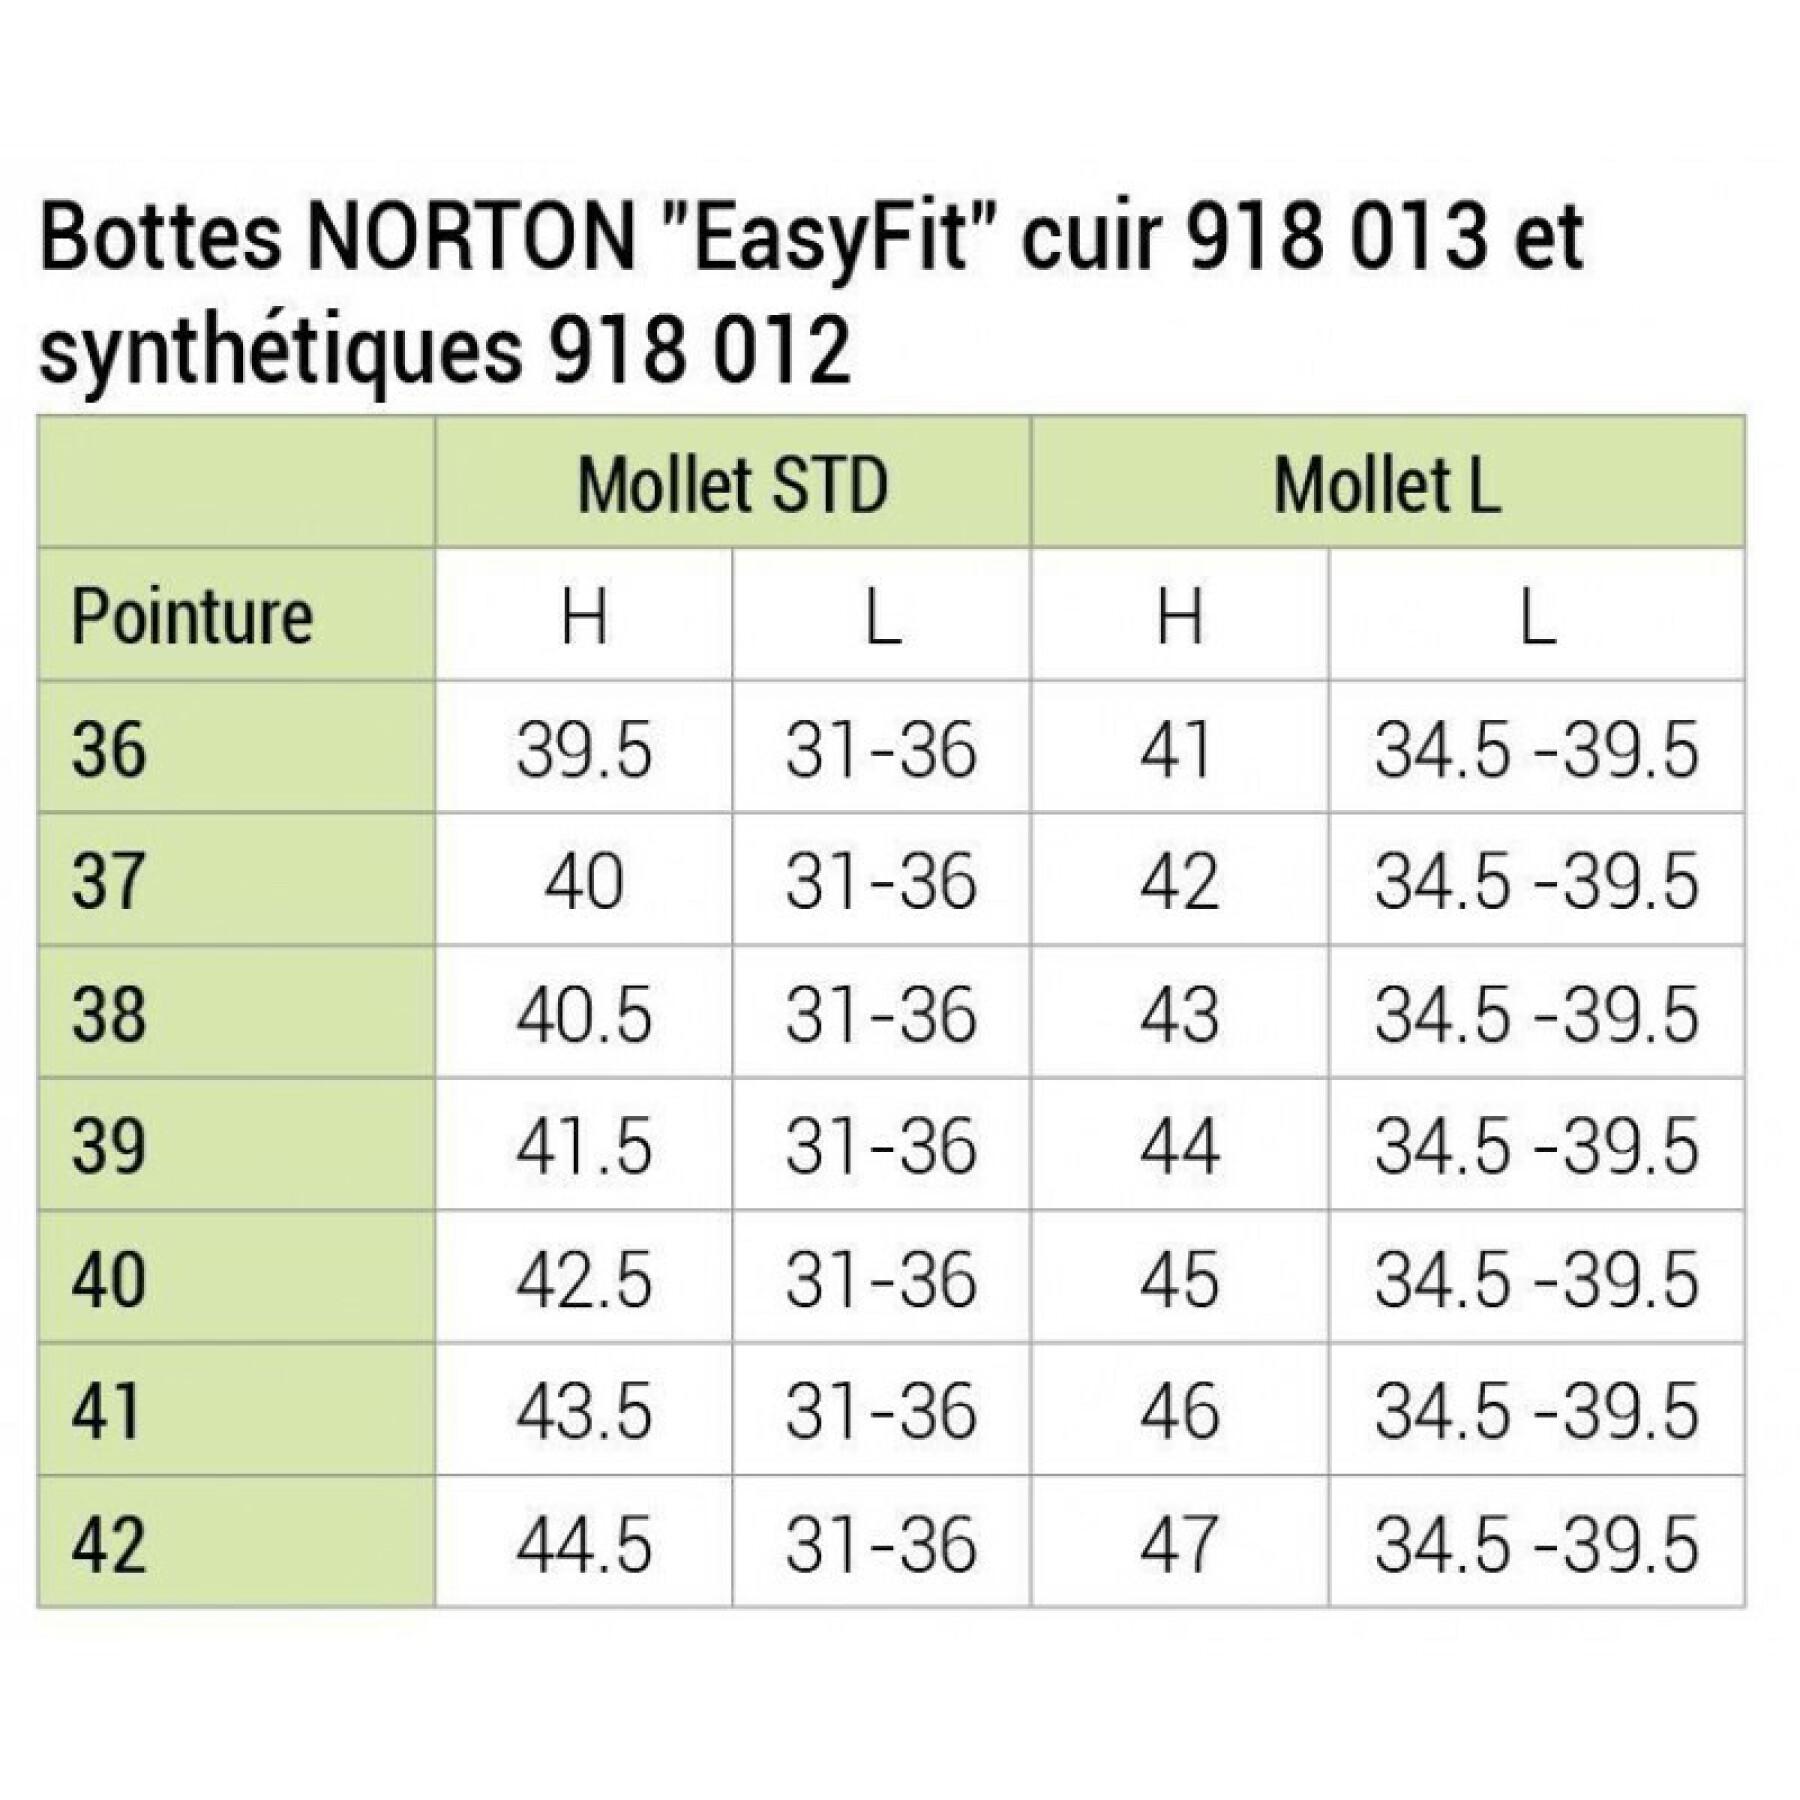 Botas de montar sintéticas para mujer Norton Easyfit